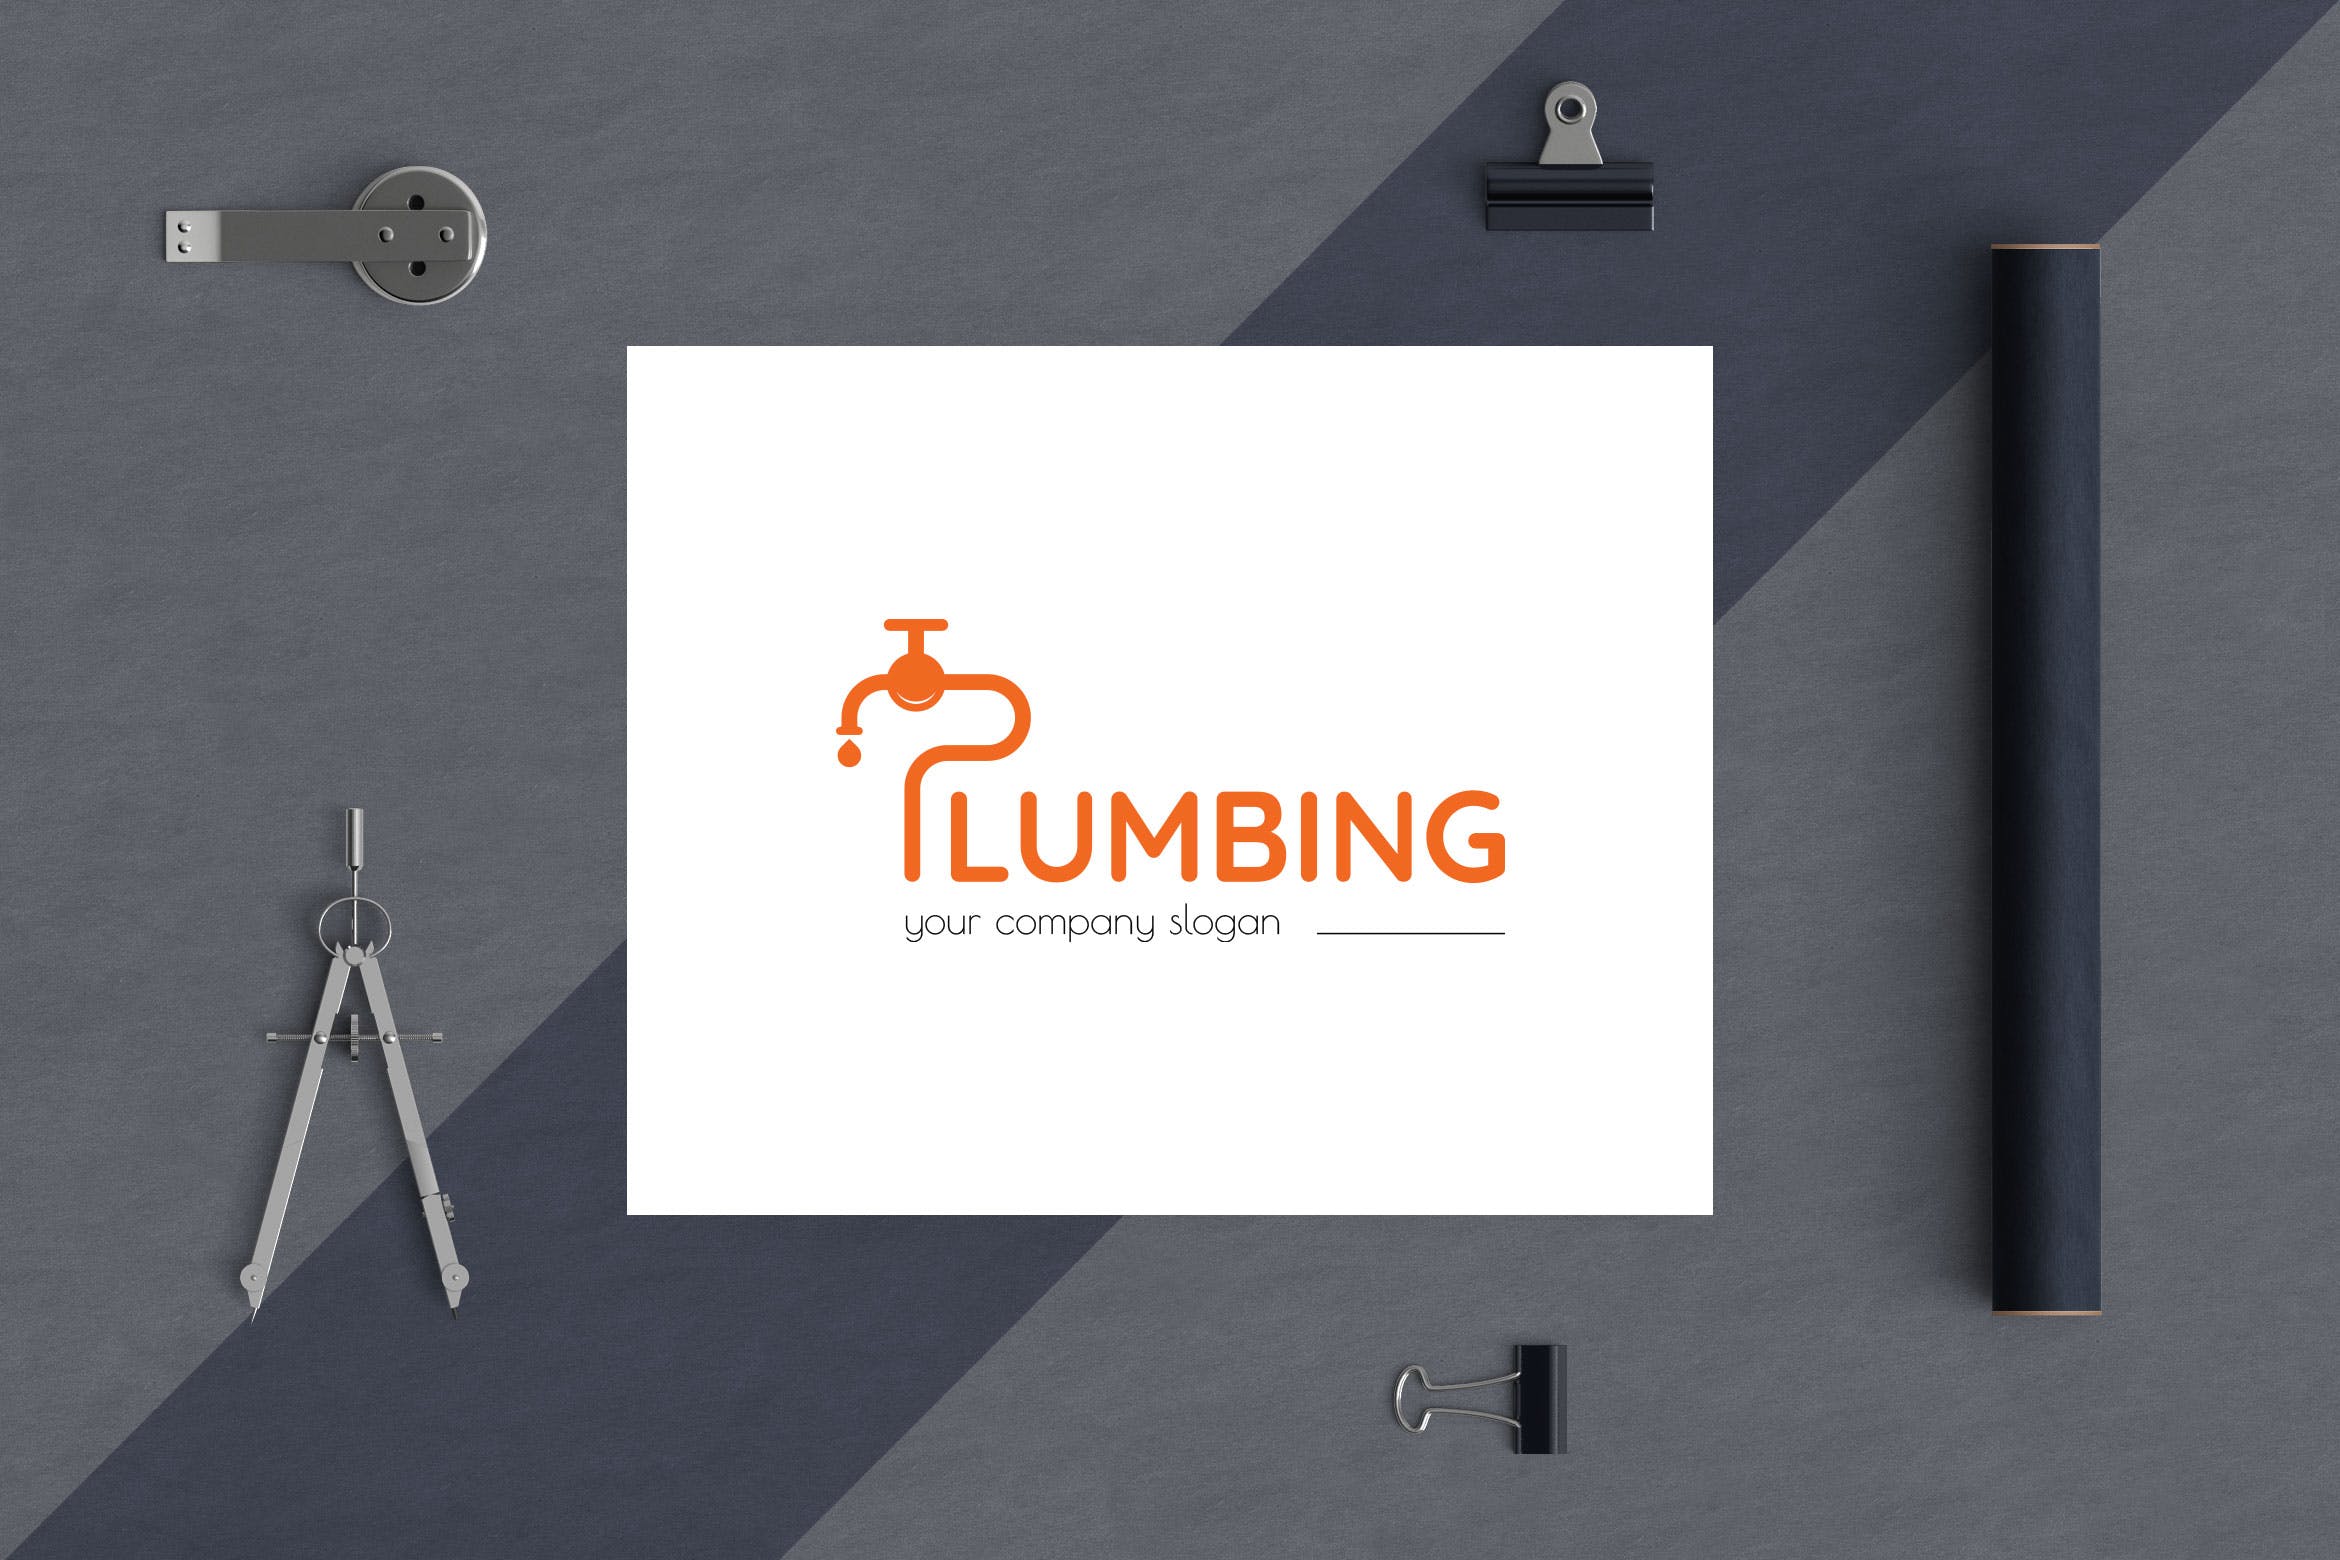 字母P图形供水设施品牌Logo设计16设计网精选模板 Plumbing Business Logo Template插图